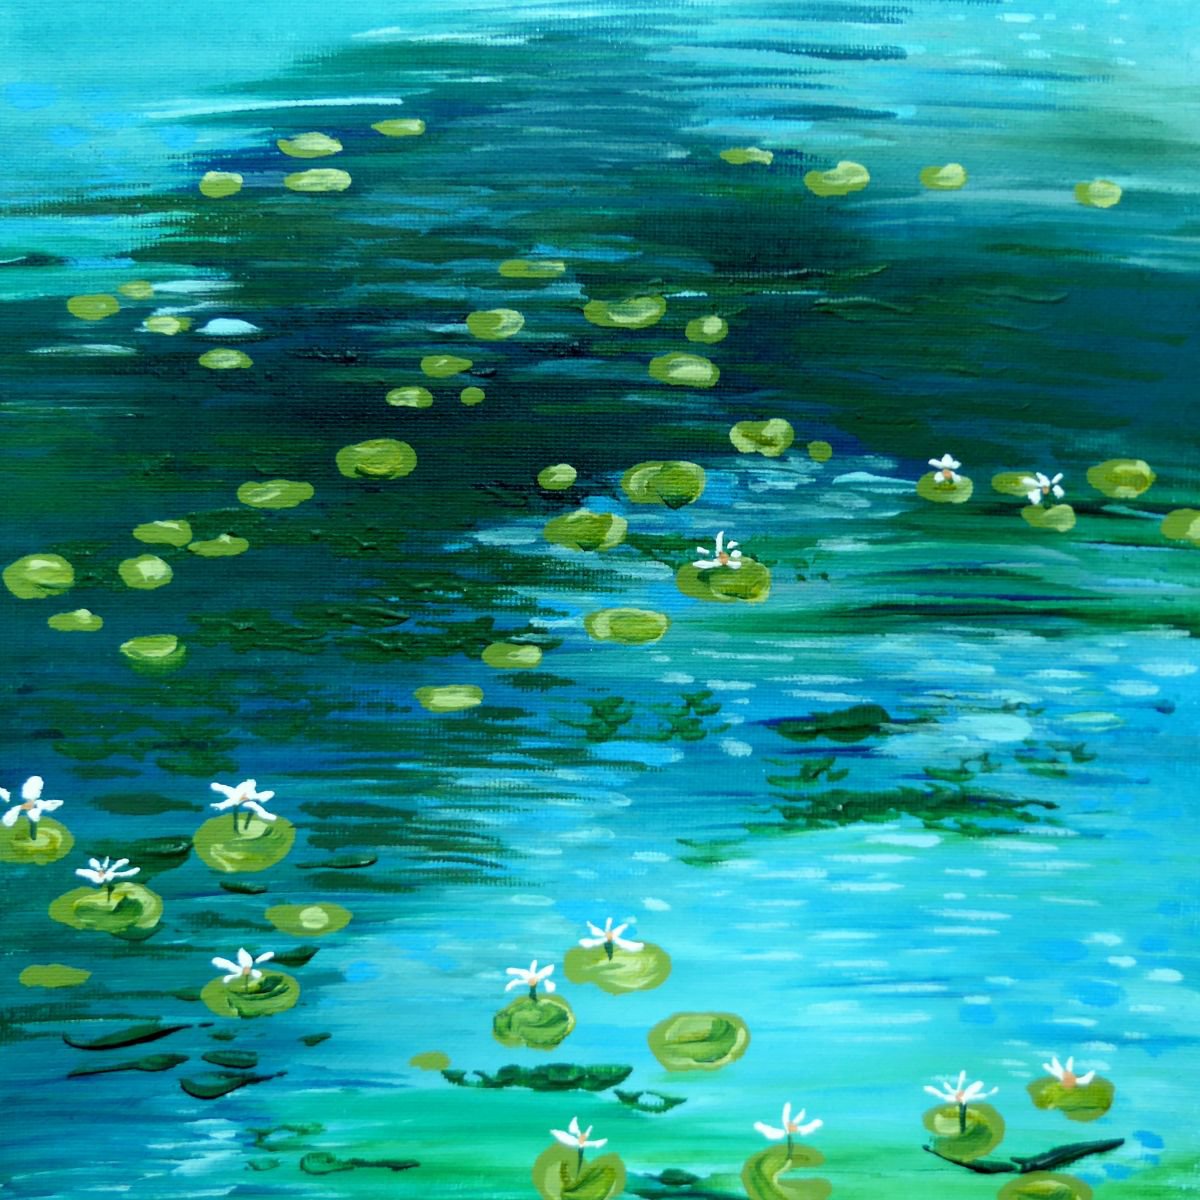 Waterlily Pond by Elaine Allender